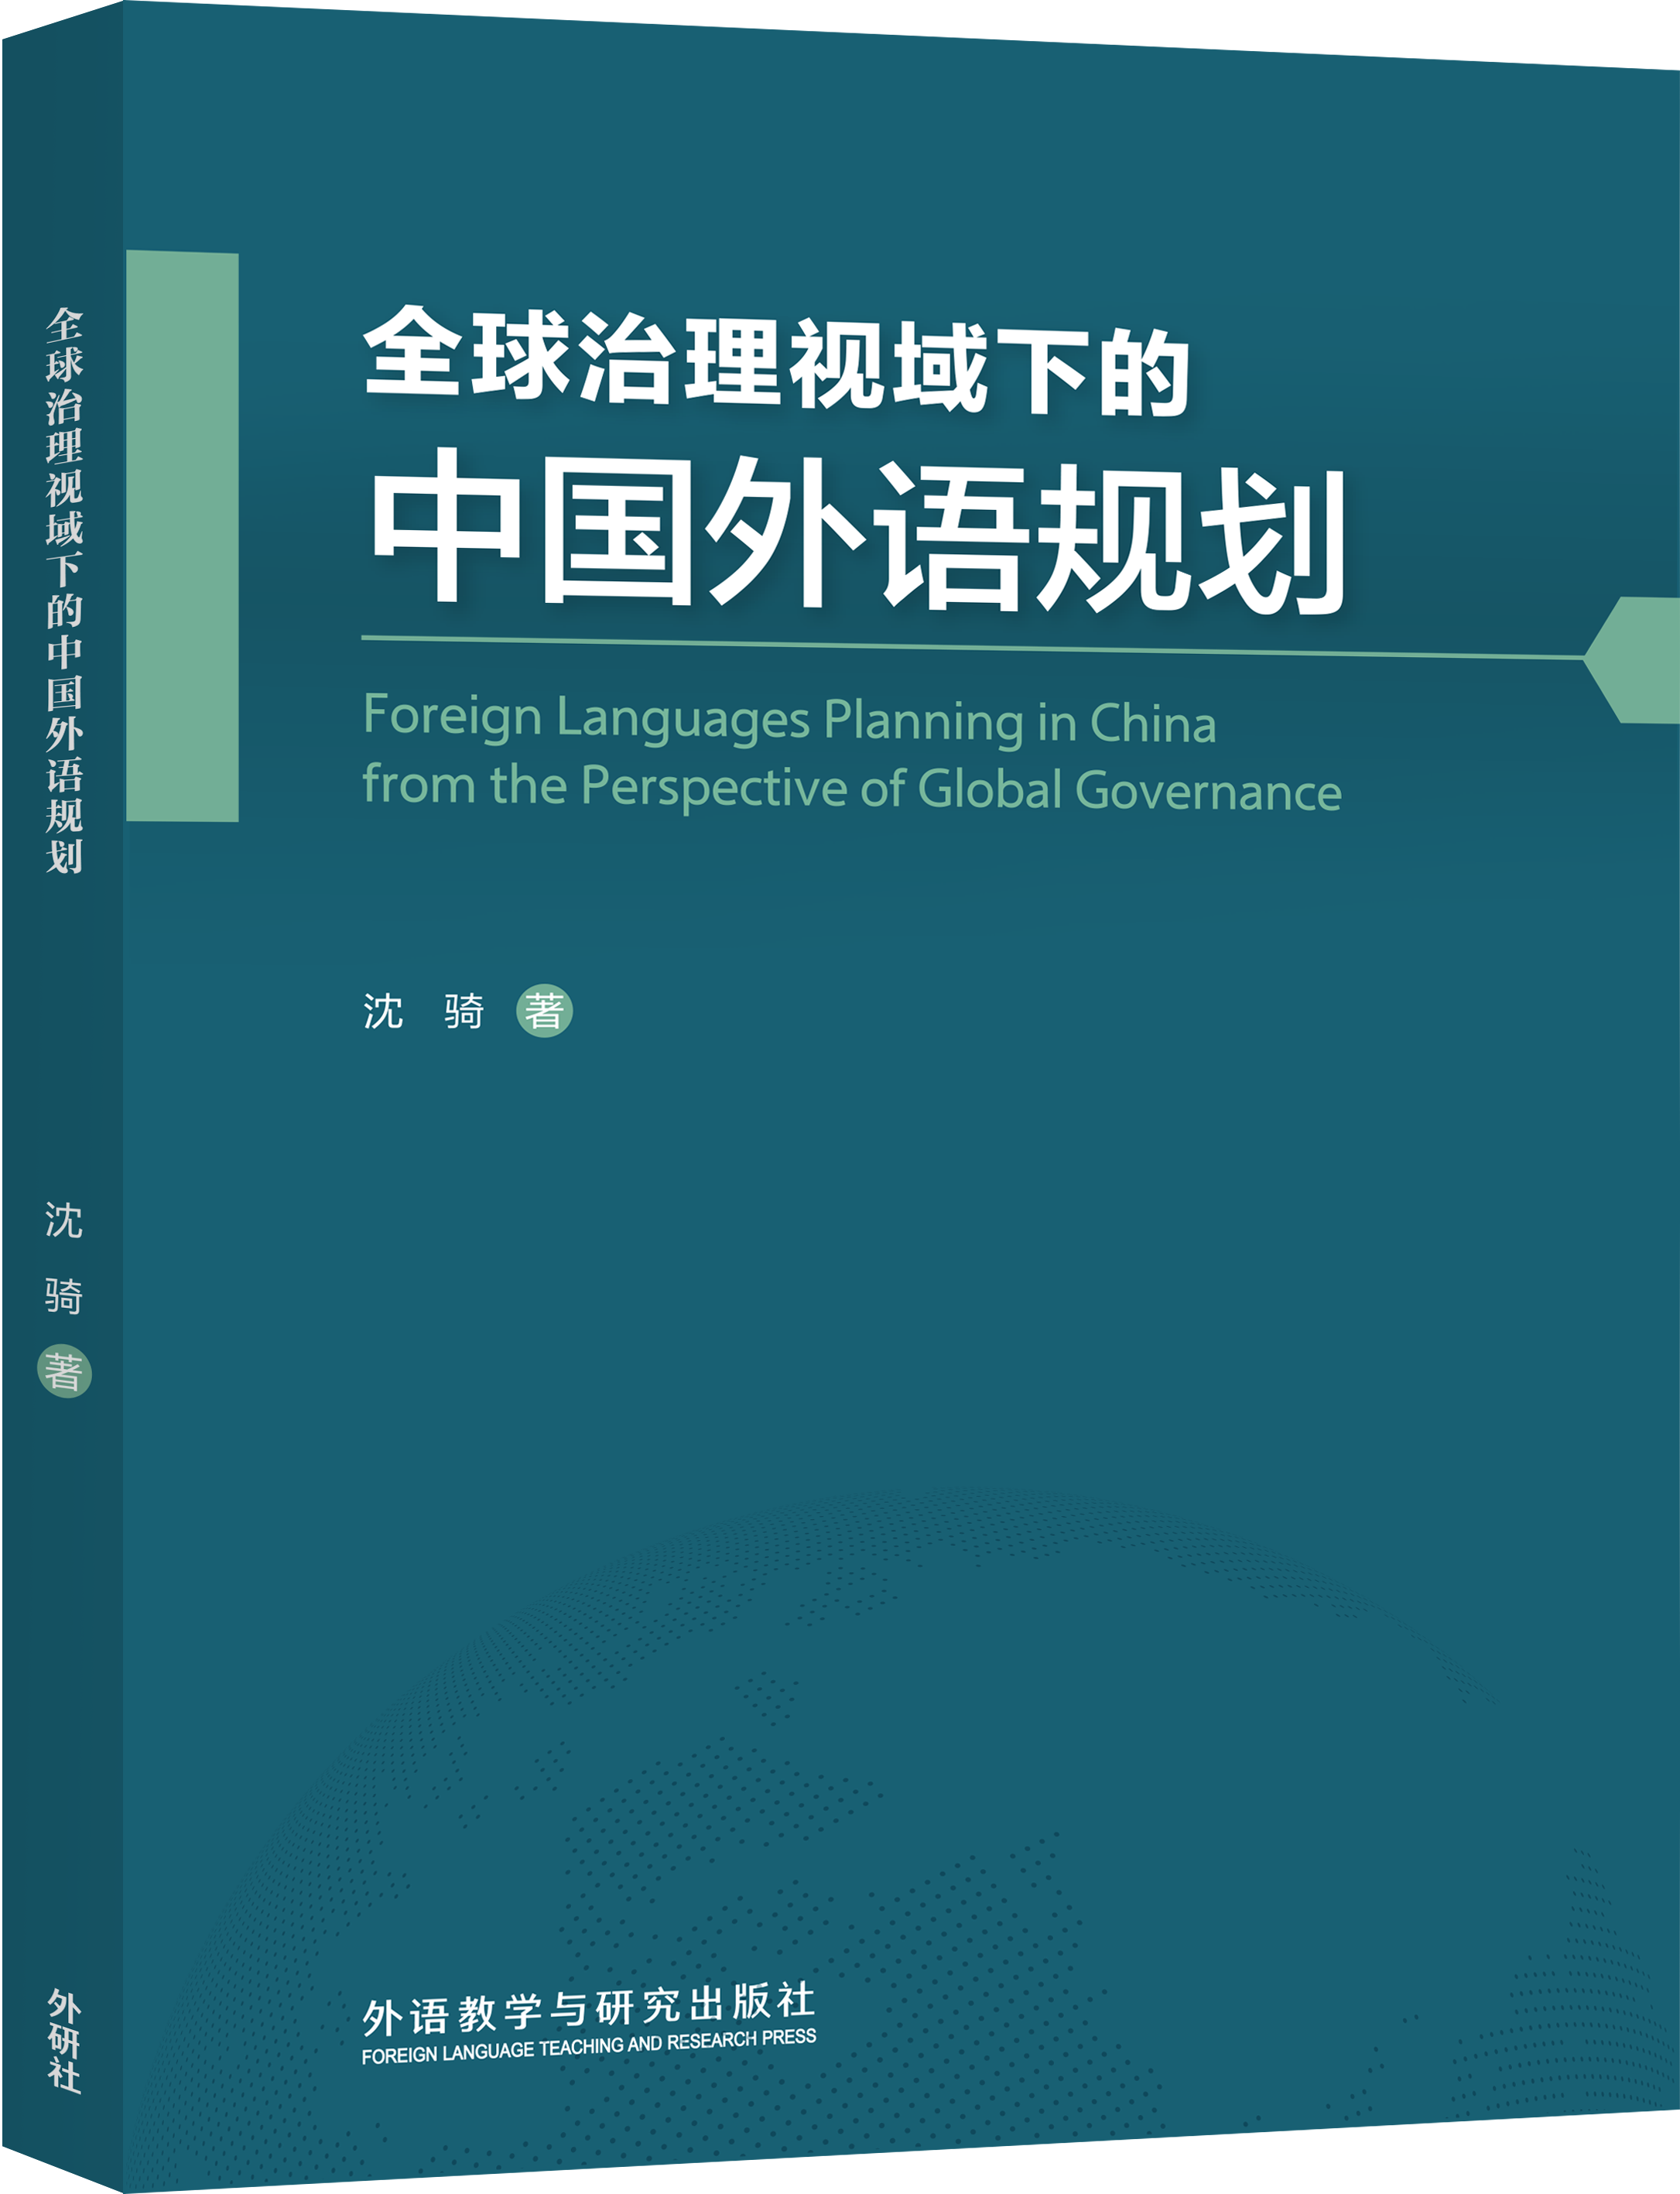 新书速递 | 《全球治理视域下的中国外语规划》新春上市！